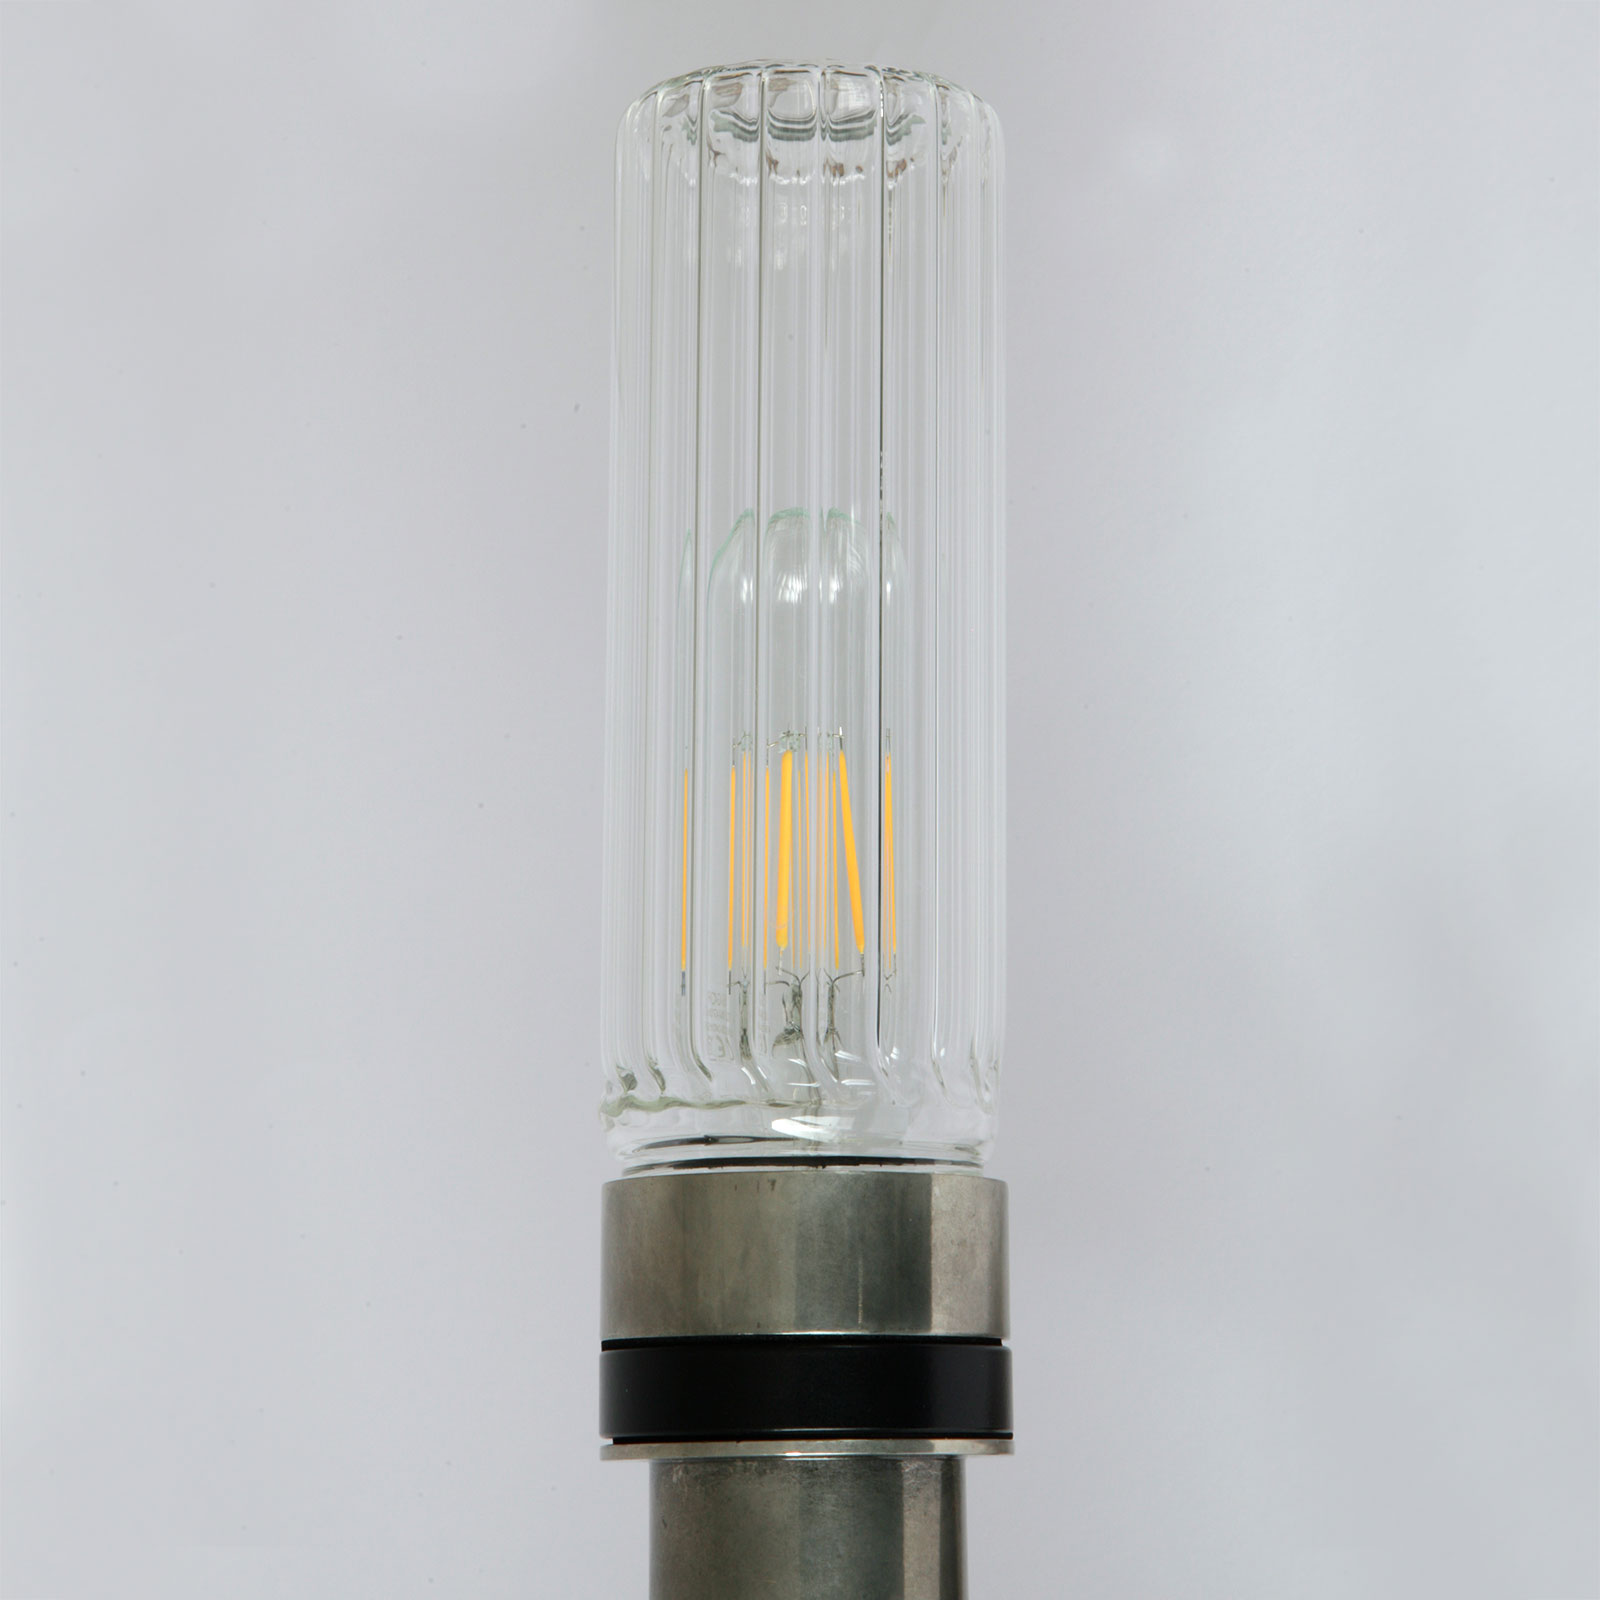 Badezimmer-Wandlampe mit klarem oder prismatischem Glaszylinder, IP65: Messing alt-silbern patiniert, gerilltes prismatisches Glas